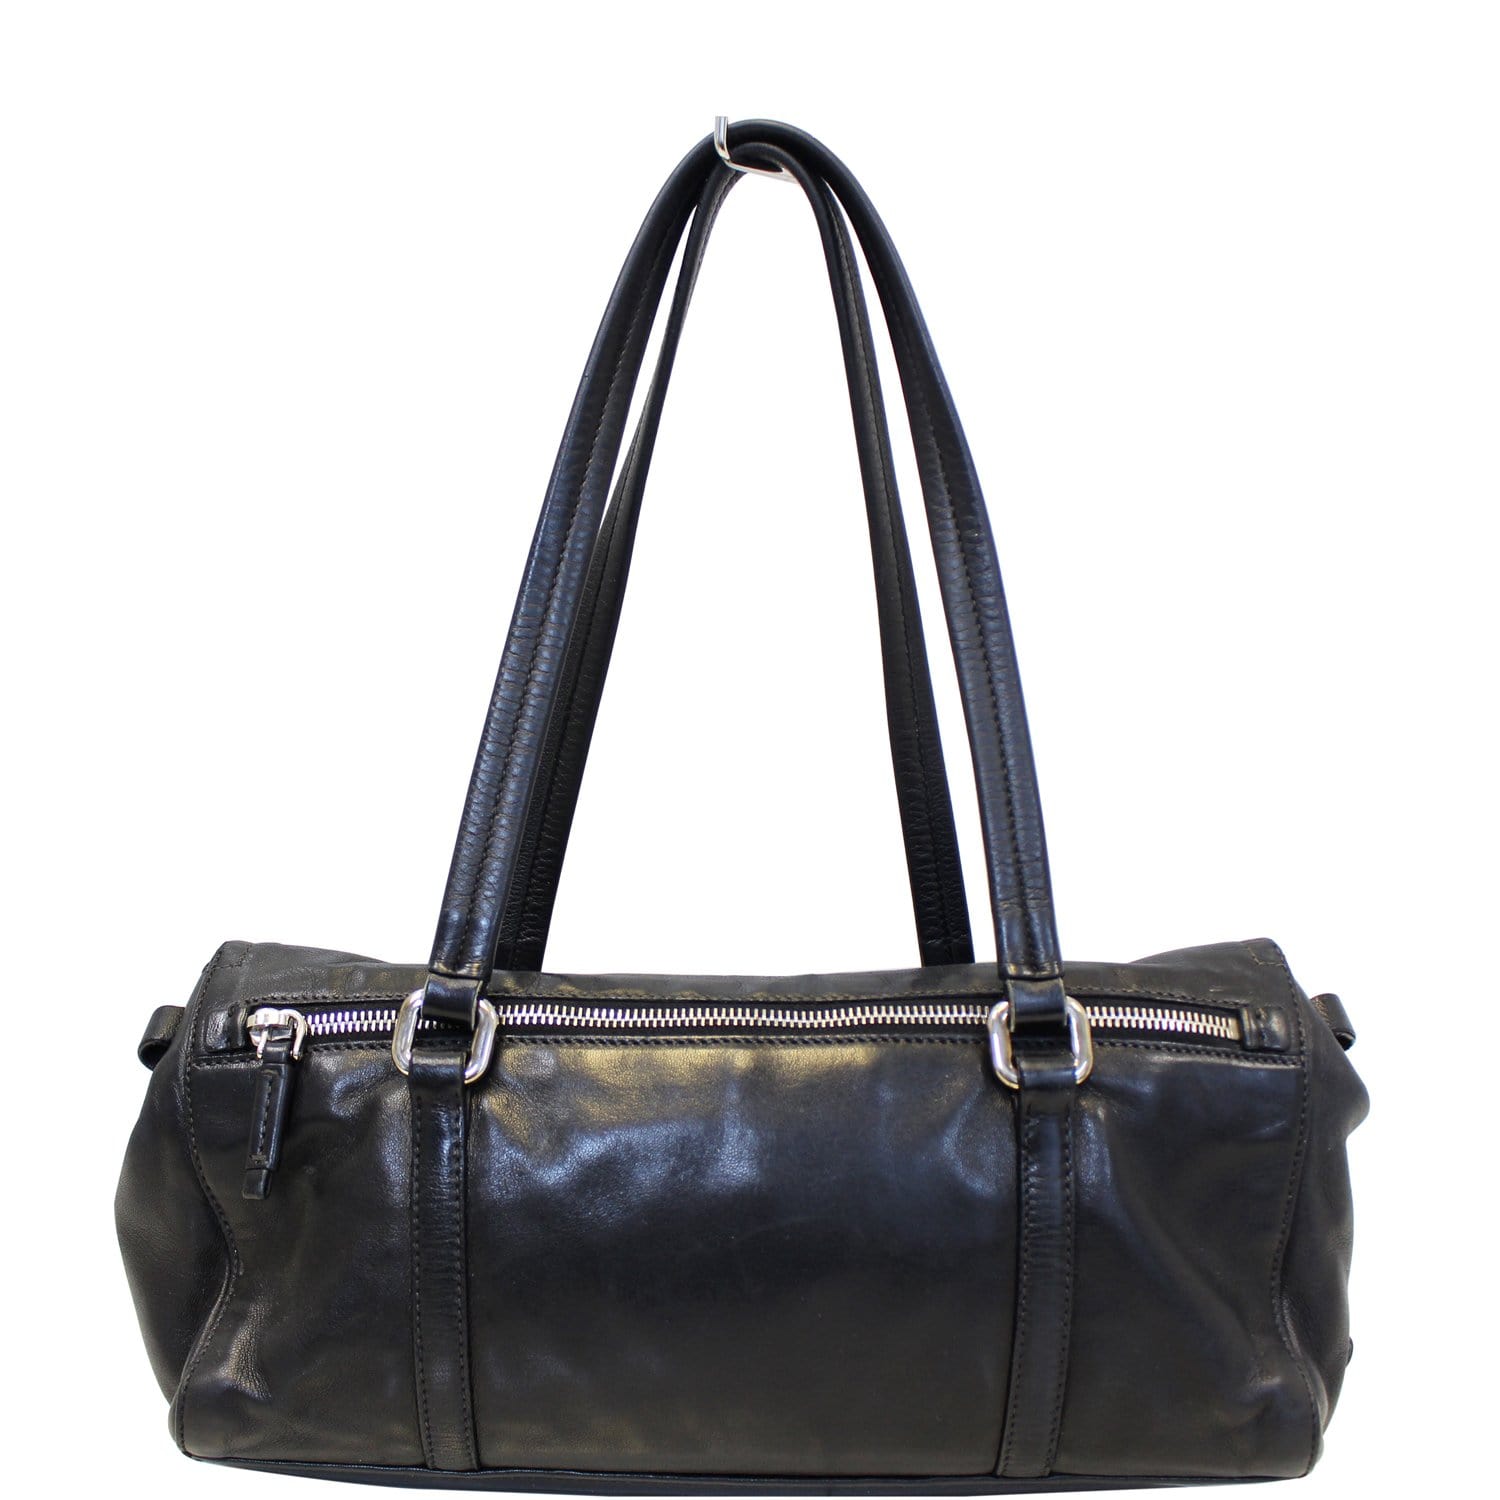 Prada - Women's Shoulder Bag - Black - Leather